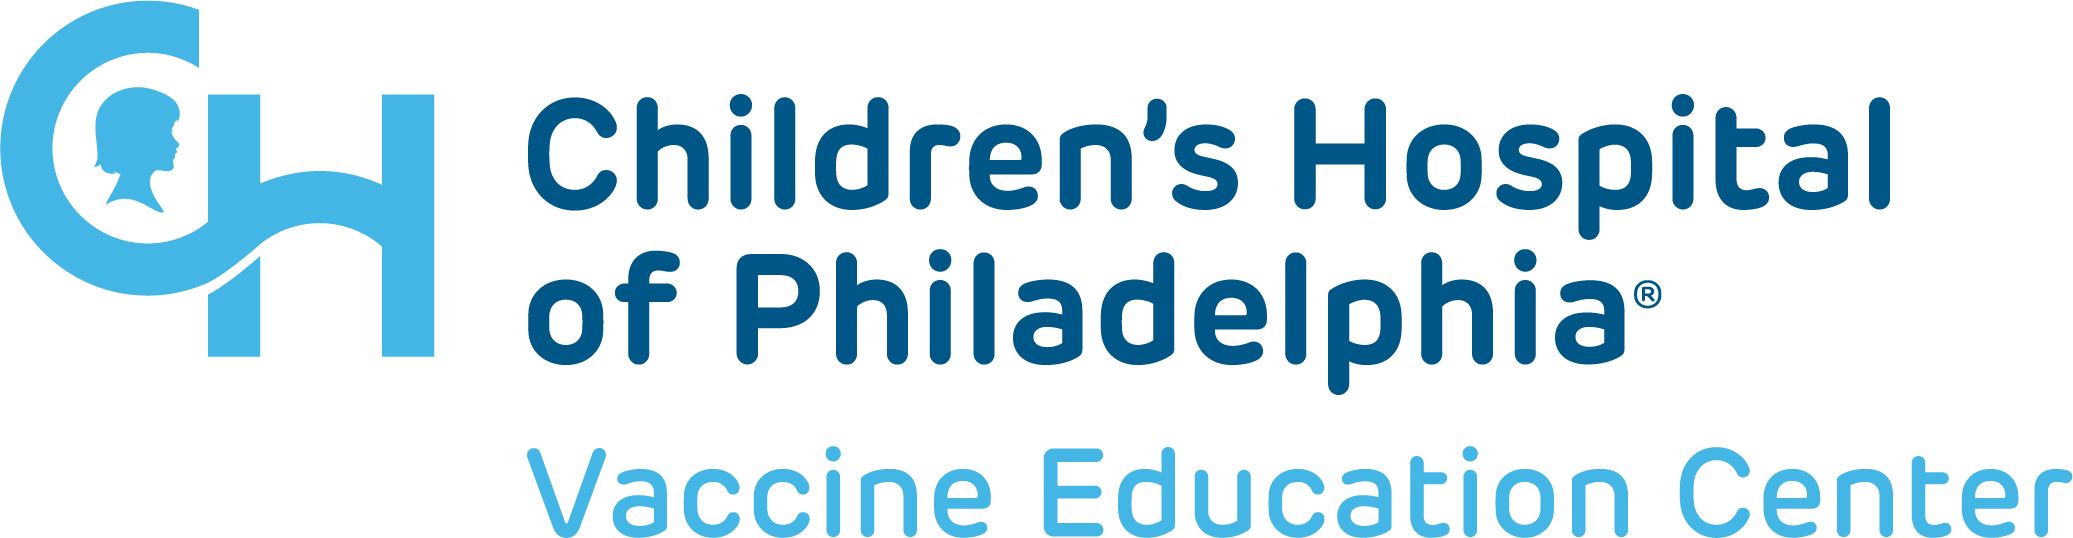 Children's Hospital of Philadelphia Vaccine Education Center logo